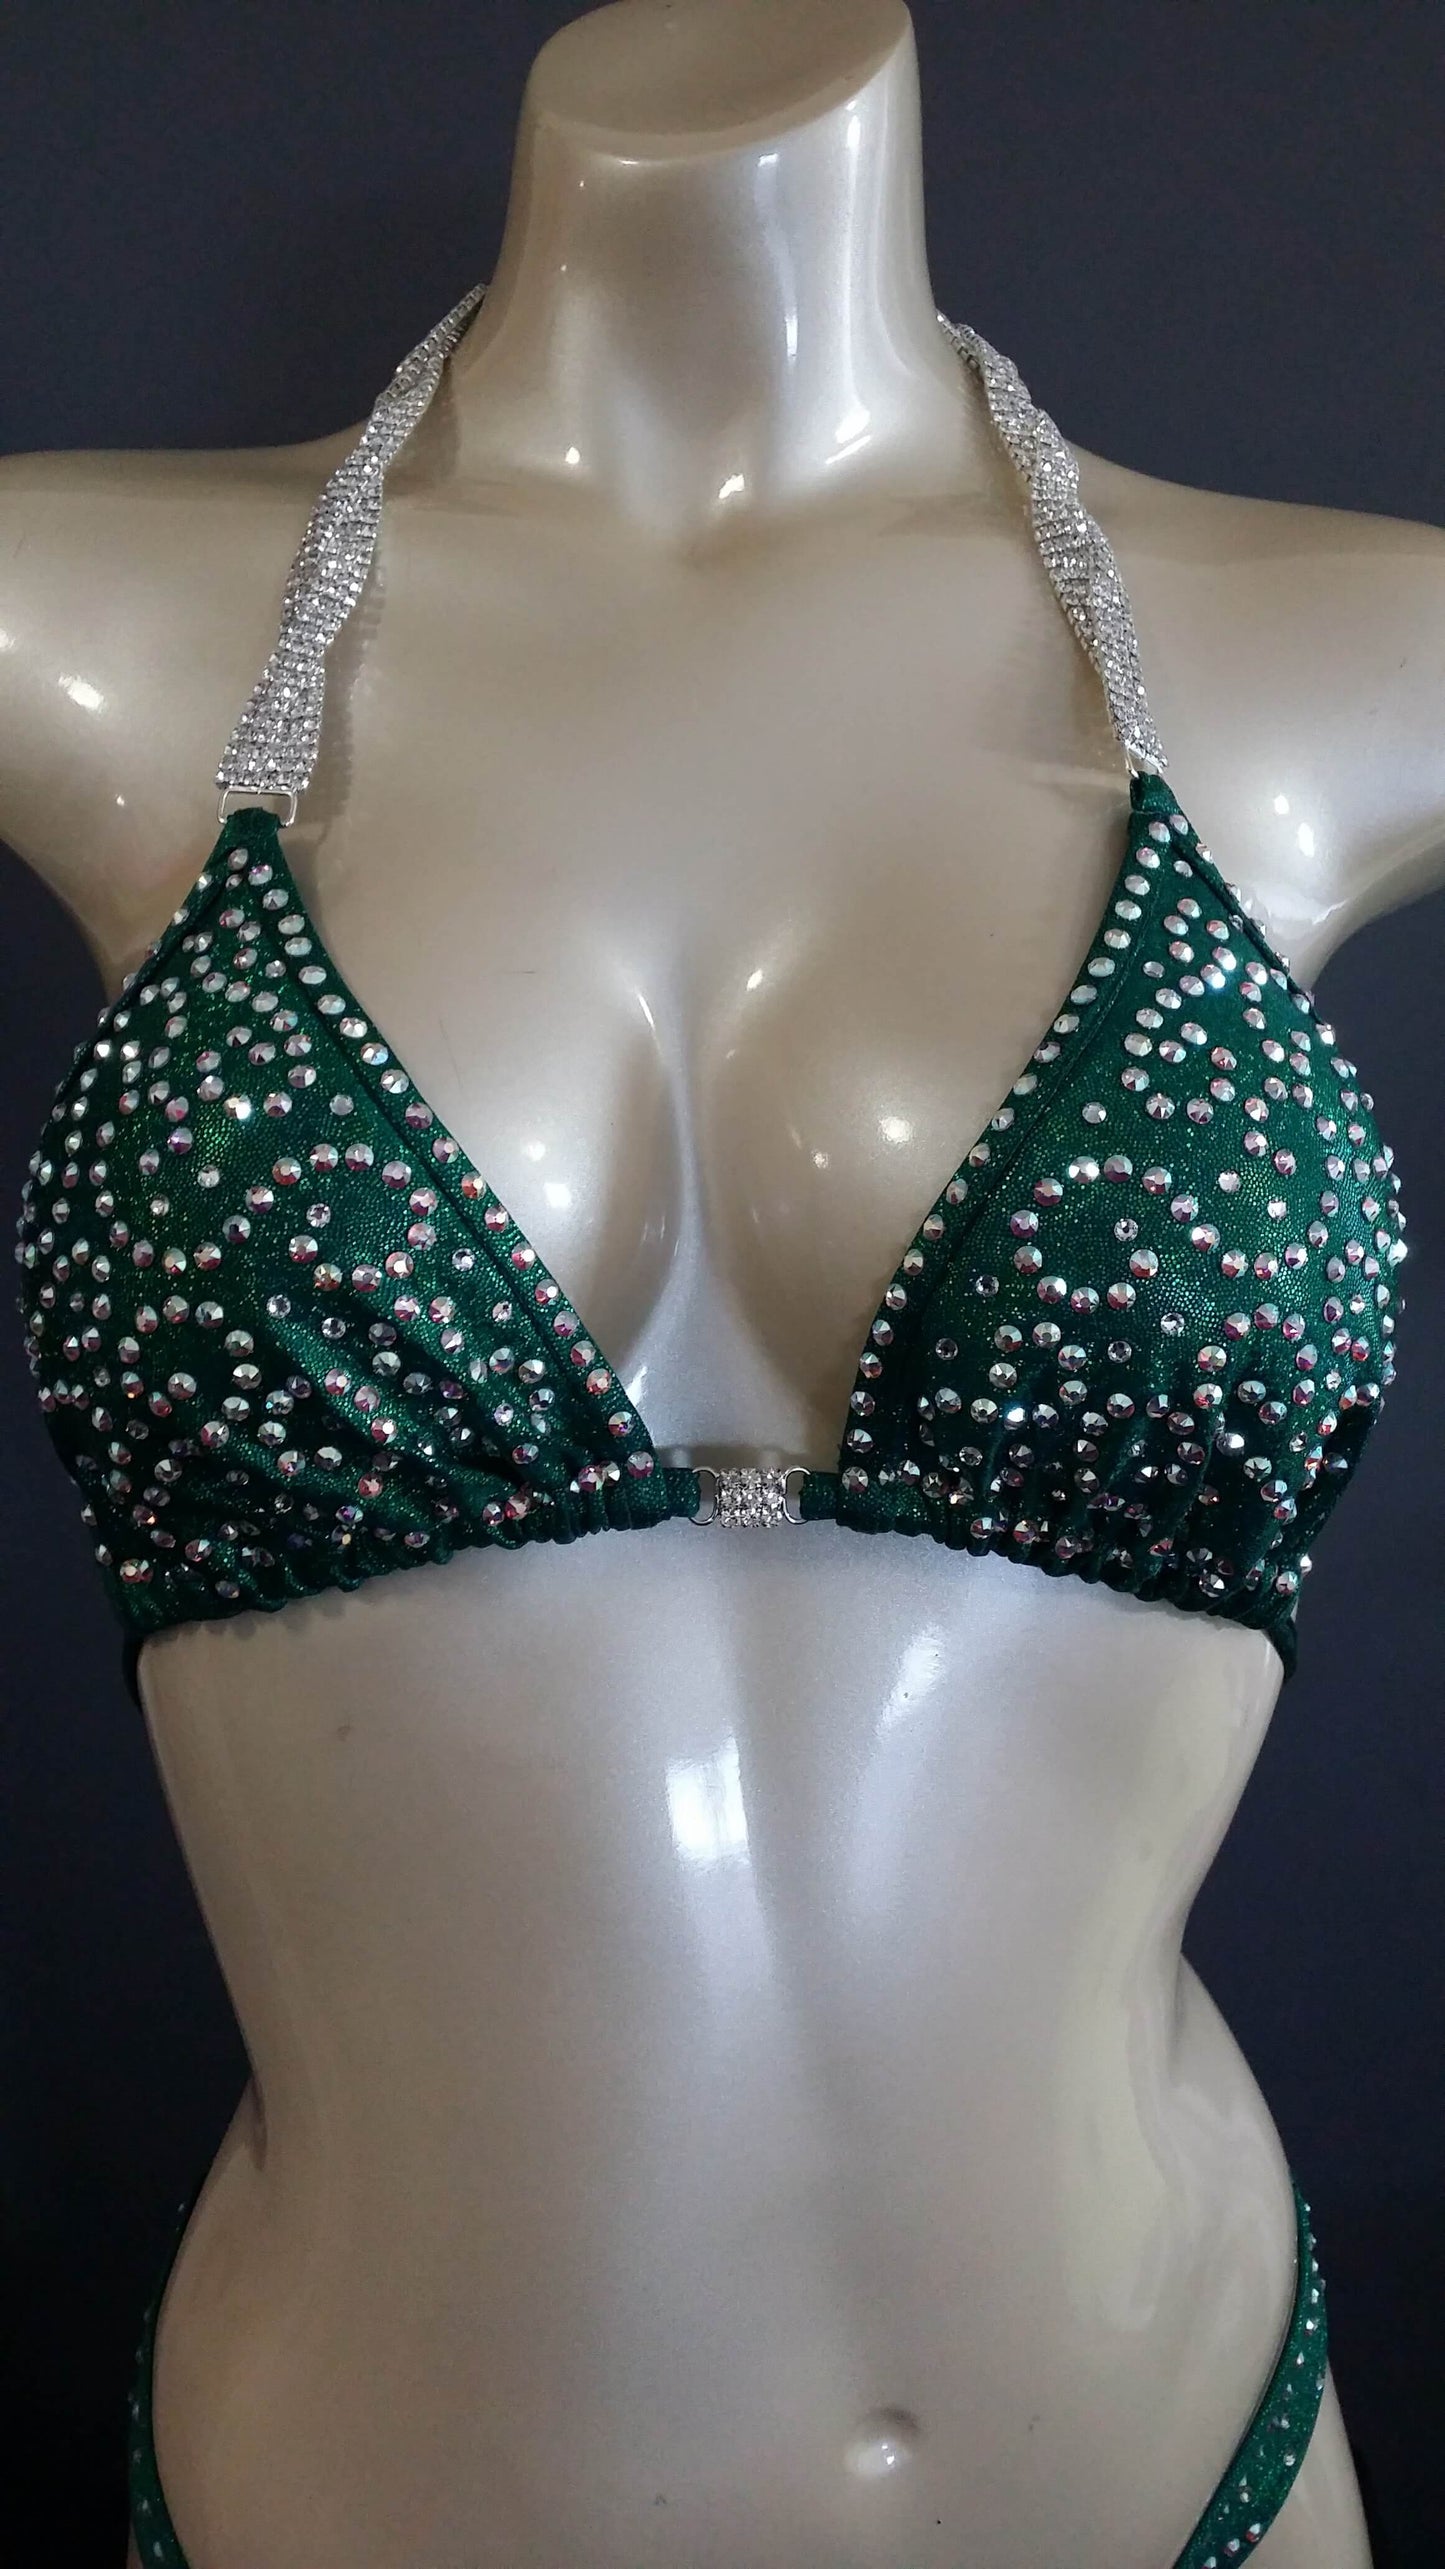 Emerald green figure suit bikini with AB swirl rhinestone design